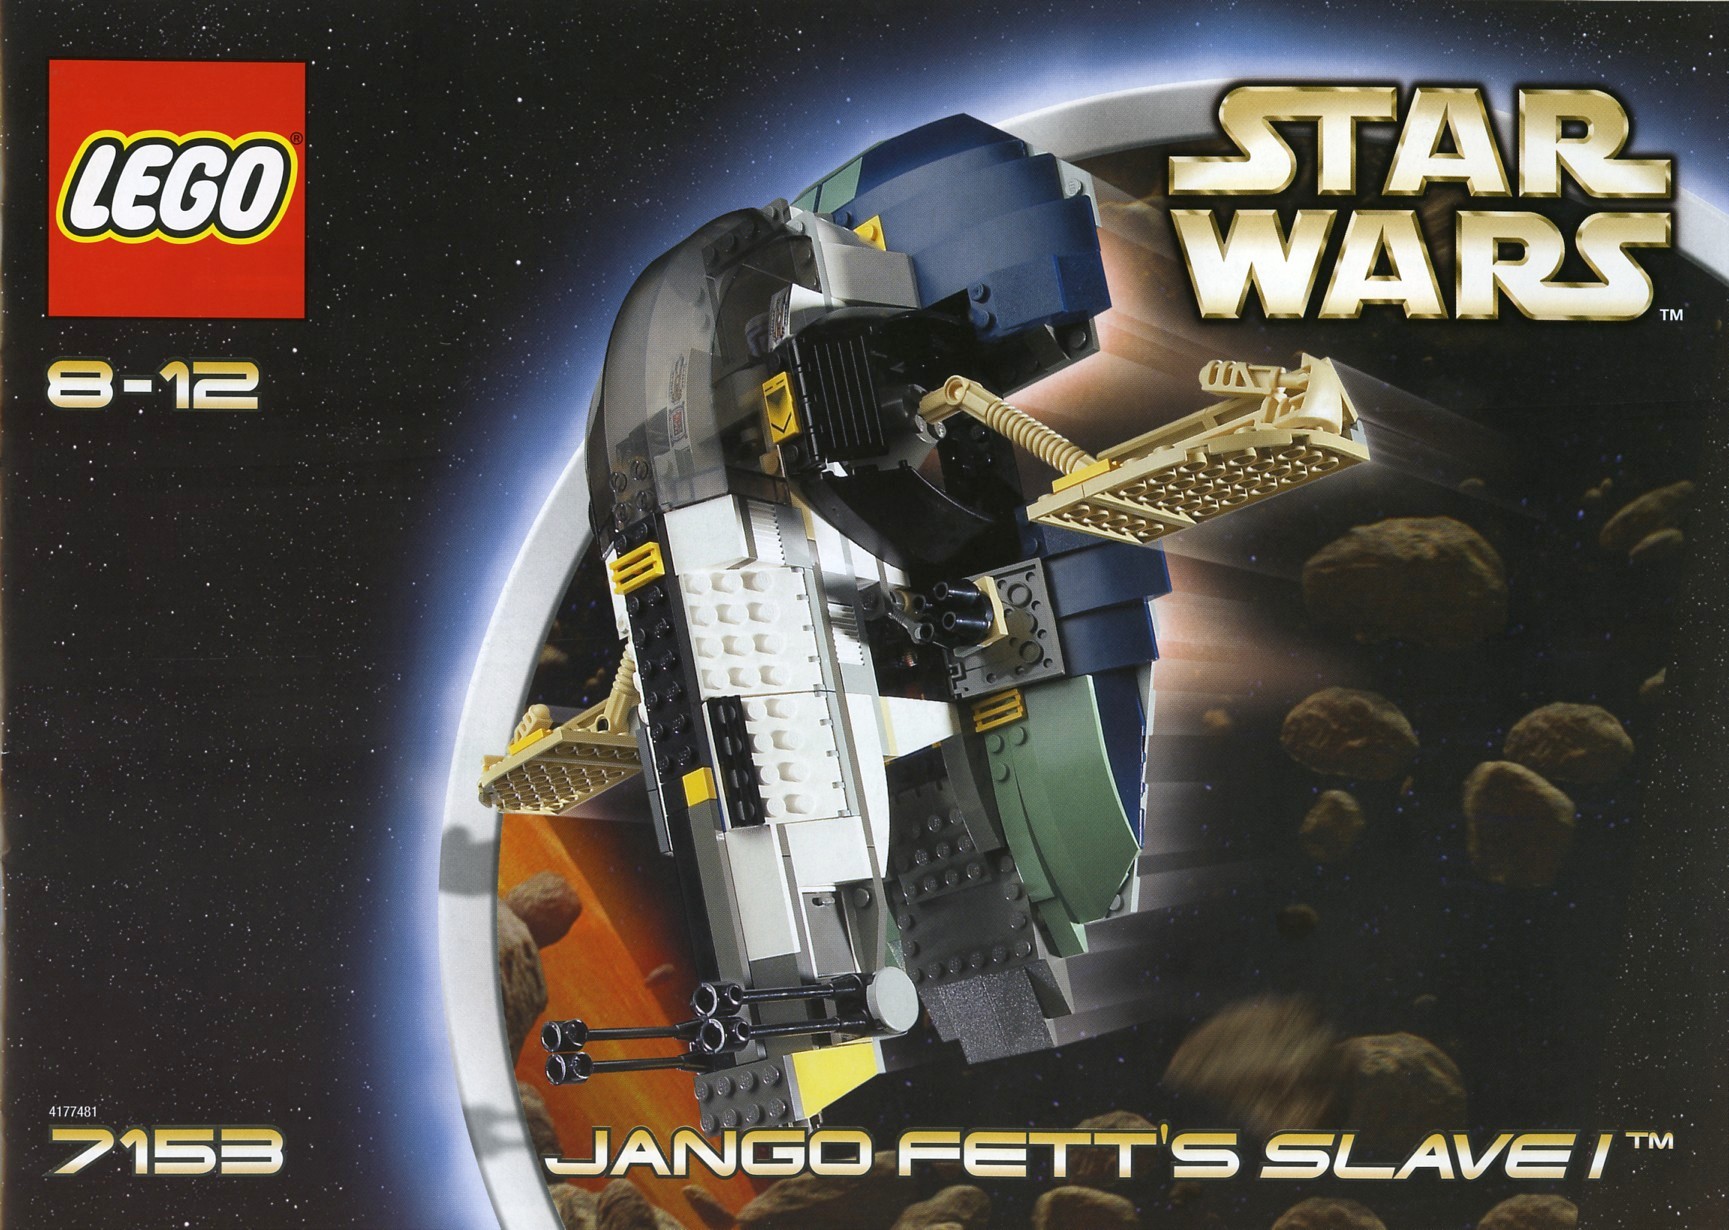 Star Wars Lego mini figure JANGO FETT de Hyperdrive 75191 sw0845 